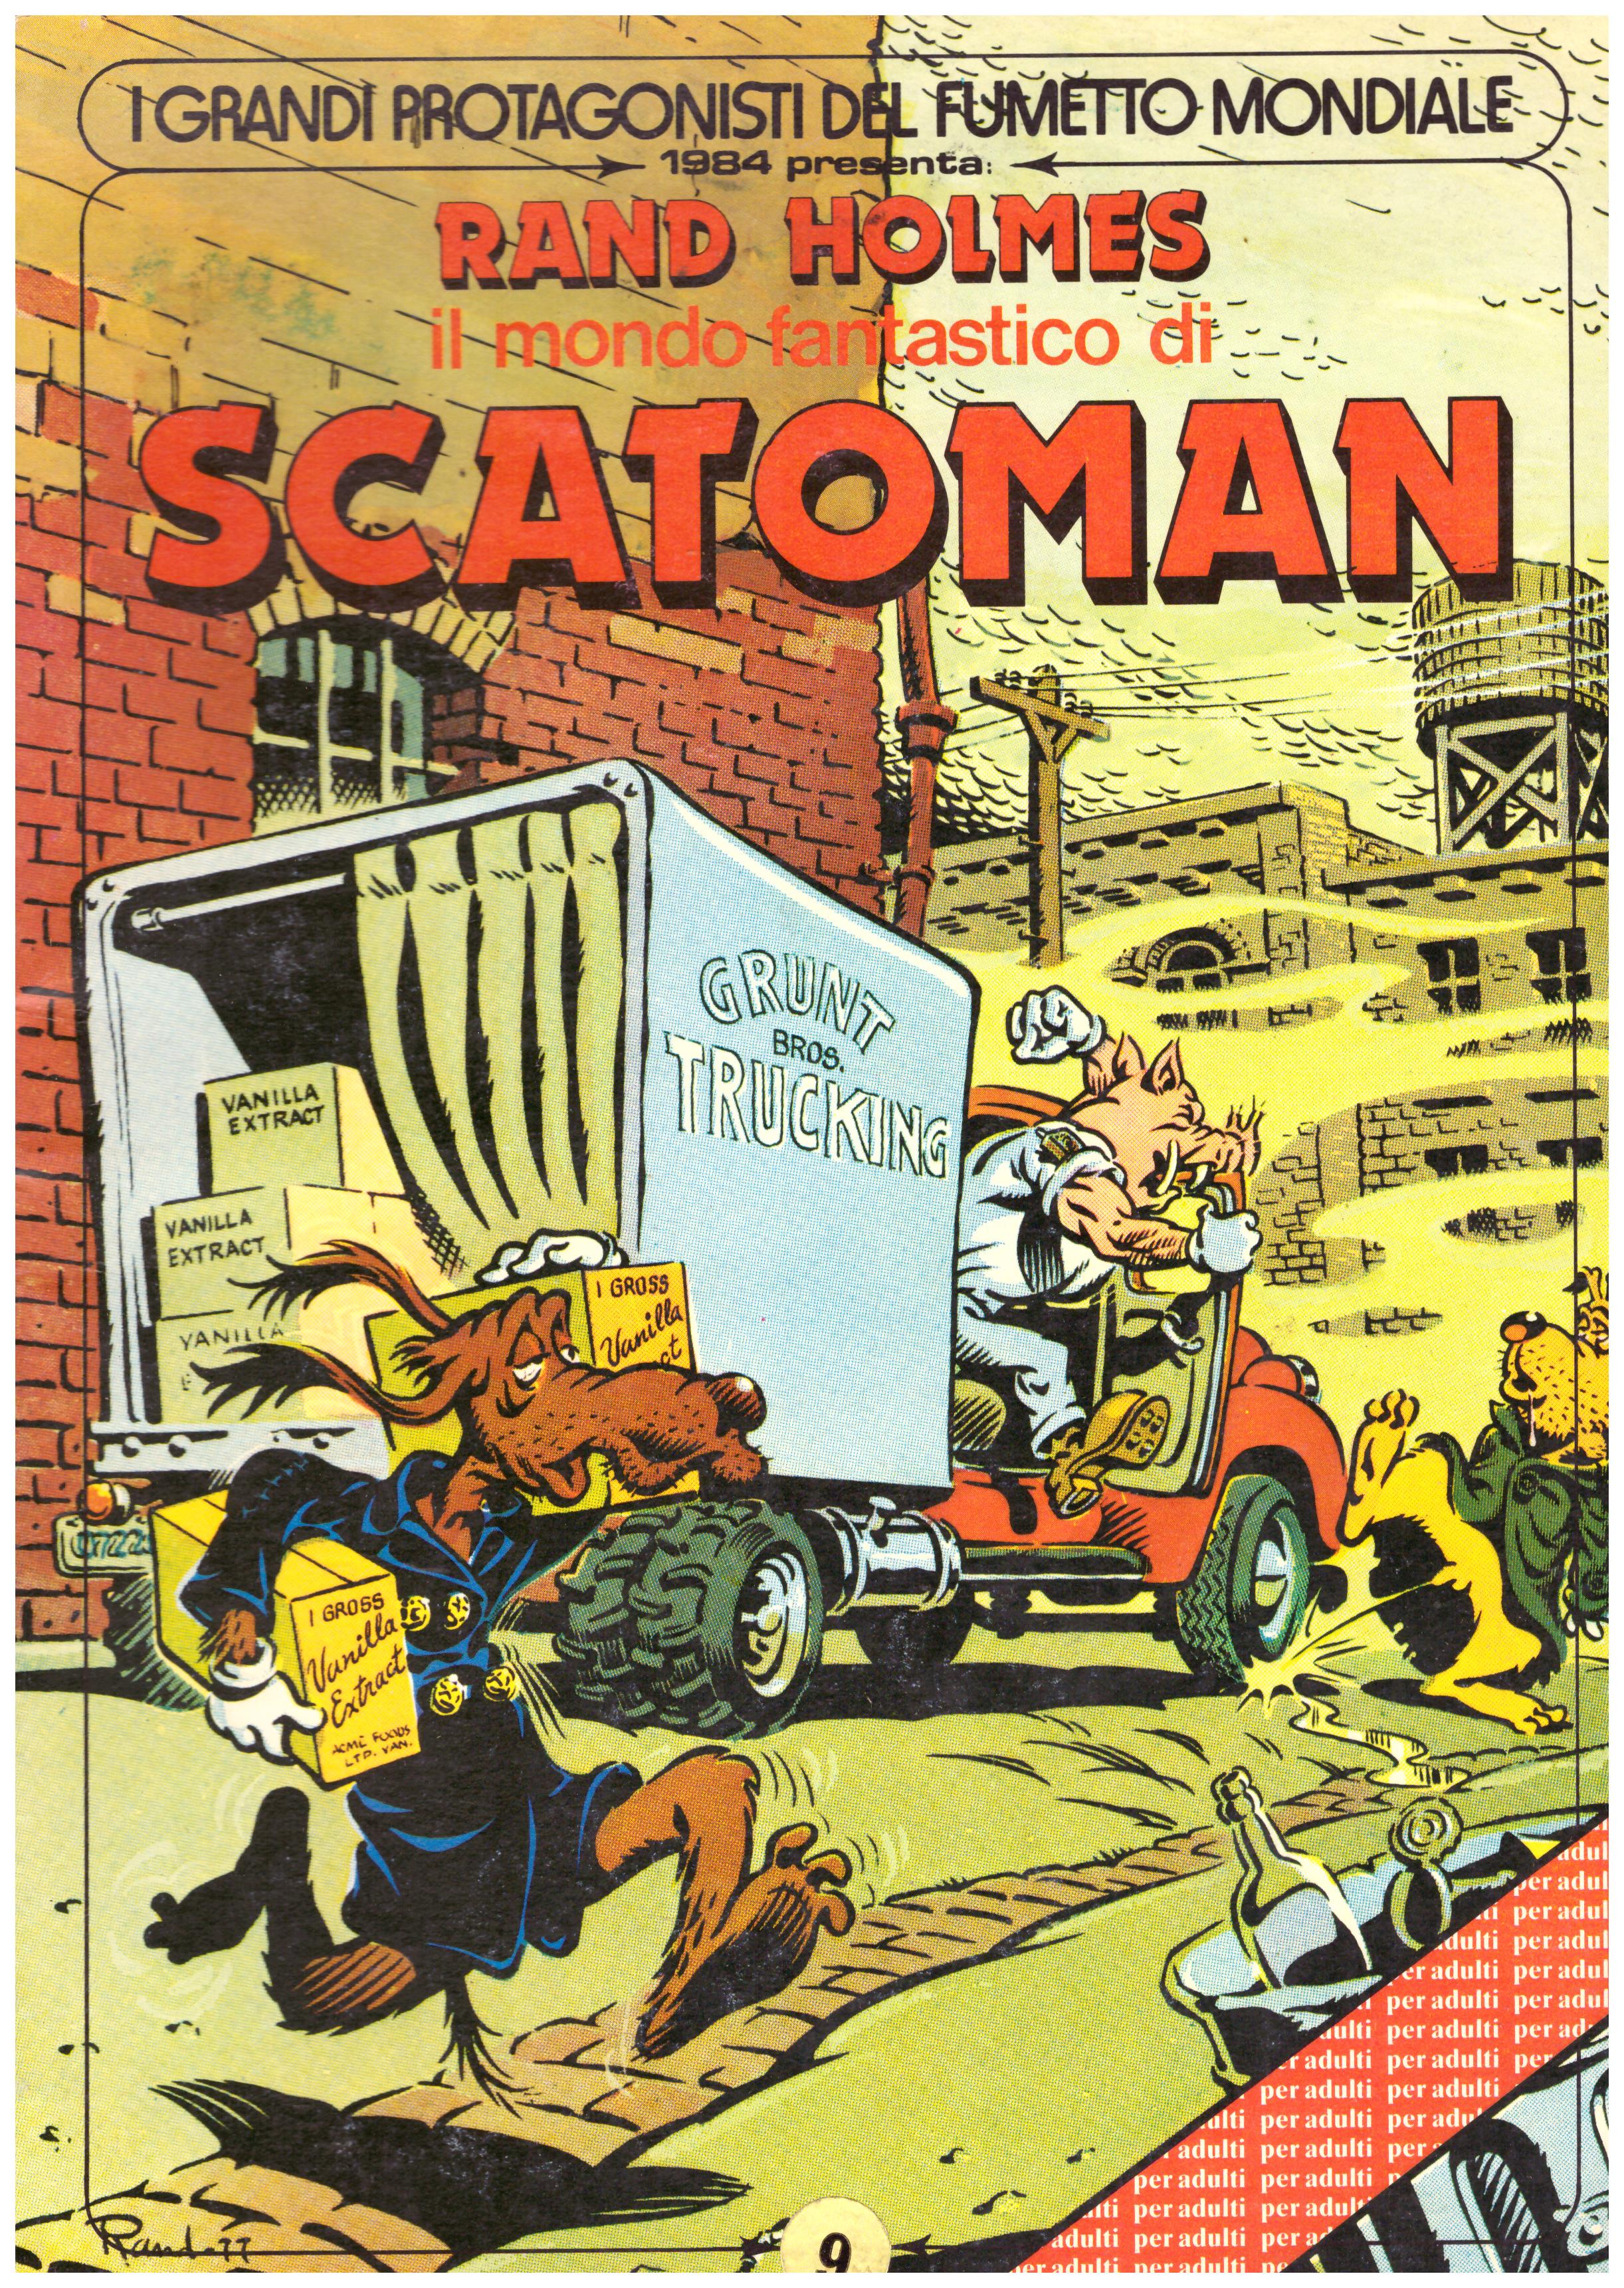 Titolo: I grandi protagonisti del fumetto mondiale presenta Rand Holmes, Scatoman  Autore: Rand Holmes  Editore: aligraf, 1984